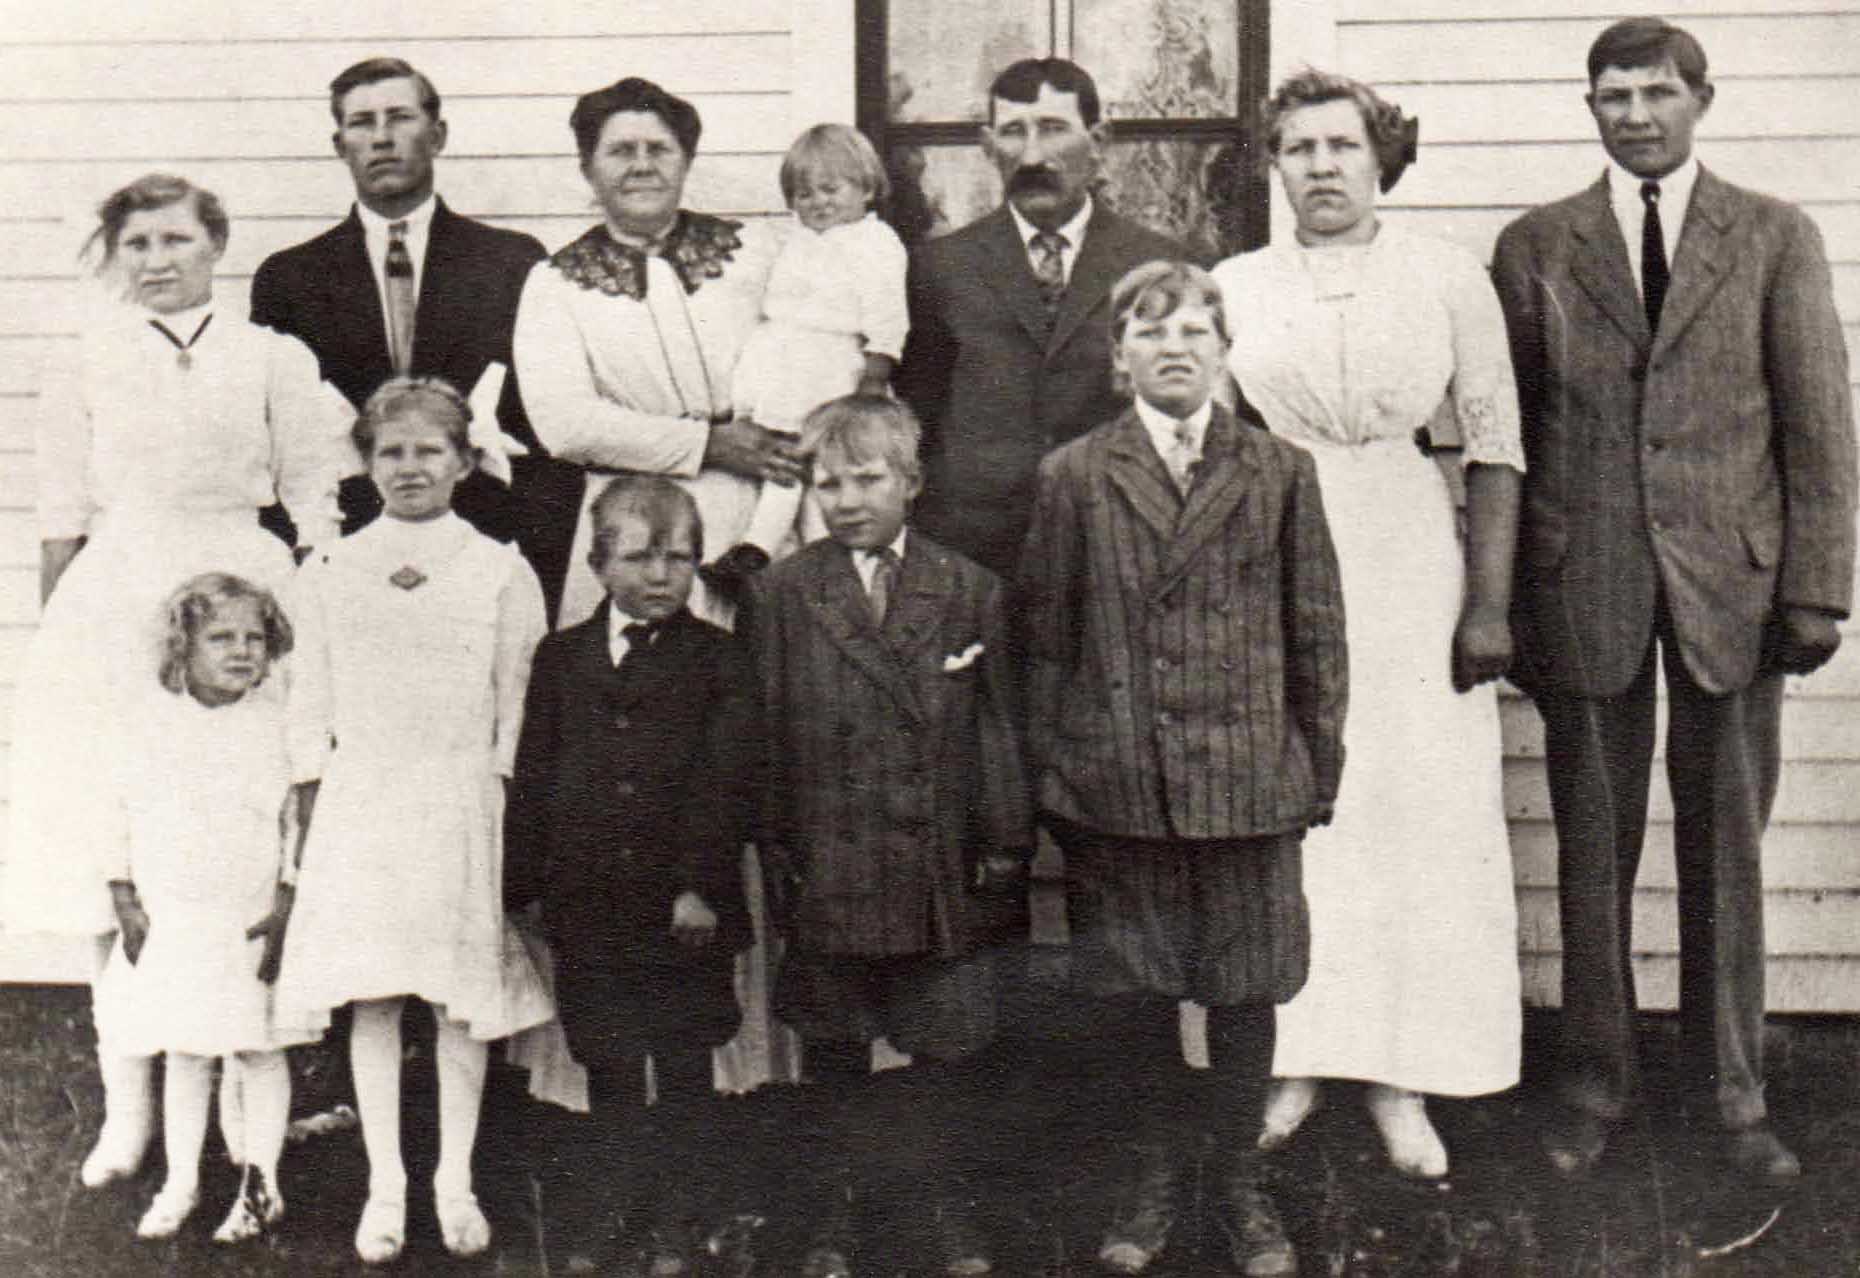 Spiering Family Christening; South Dakota